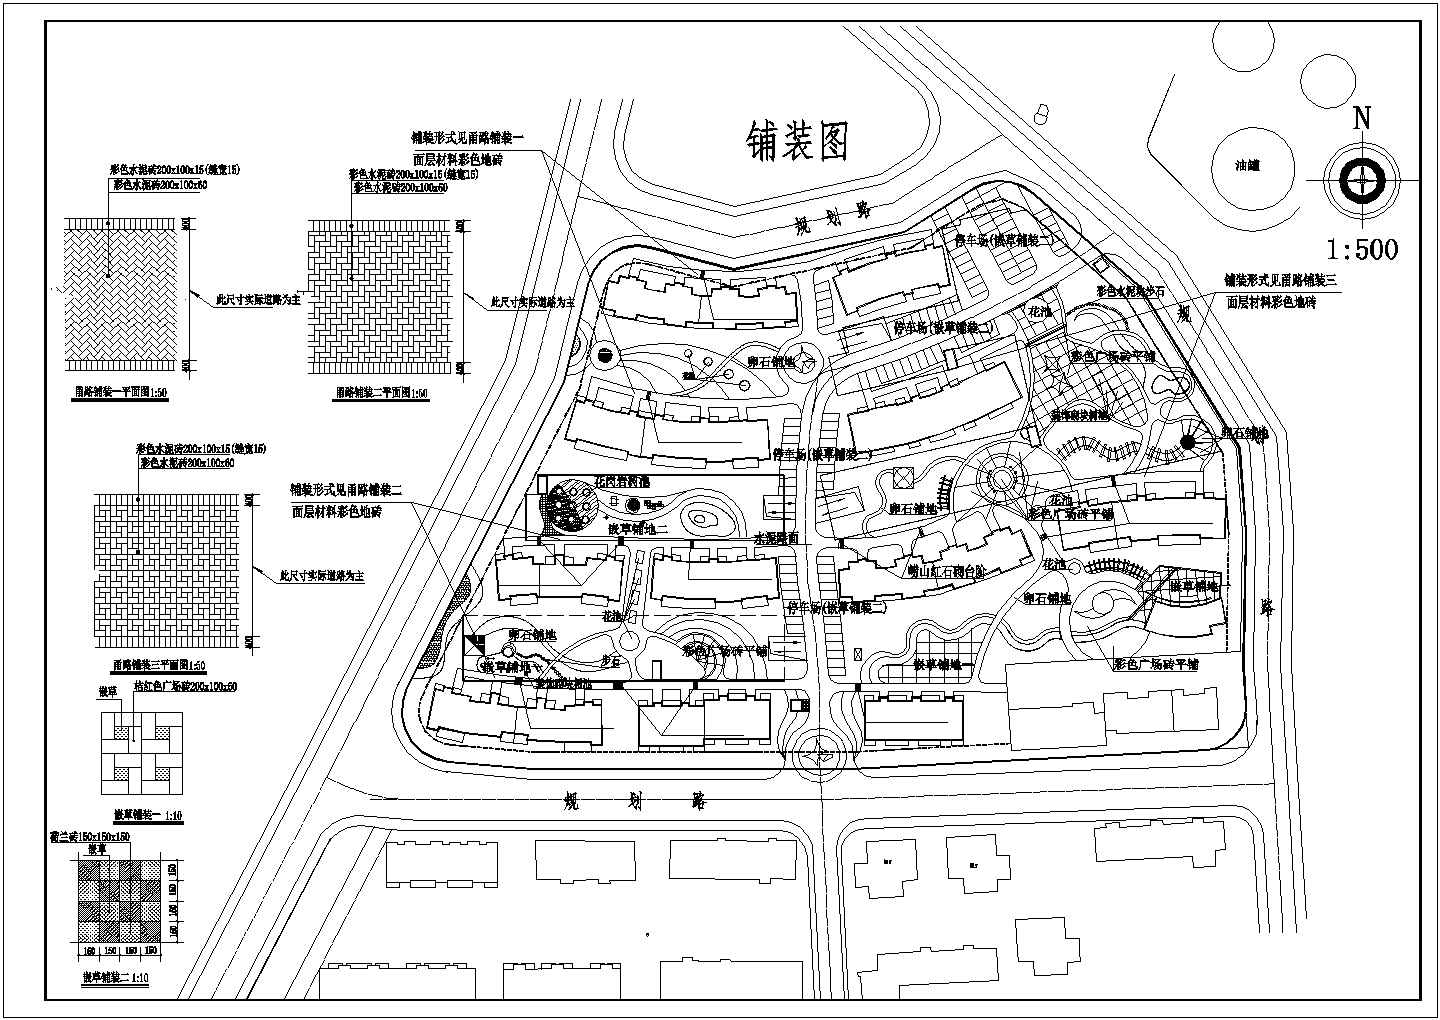 某现代居民小区平面总规划详细设计施工方案CAD图纸